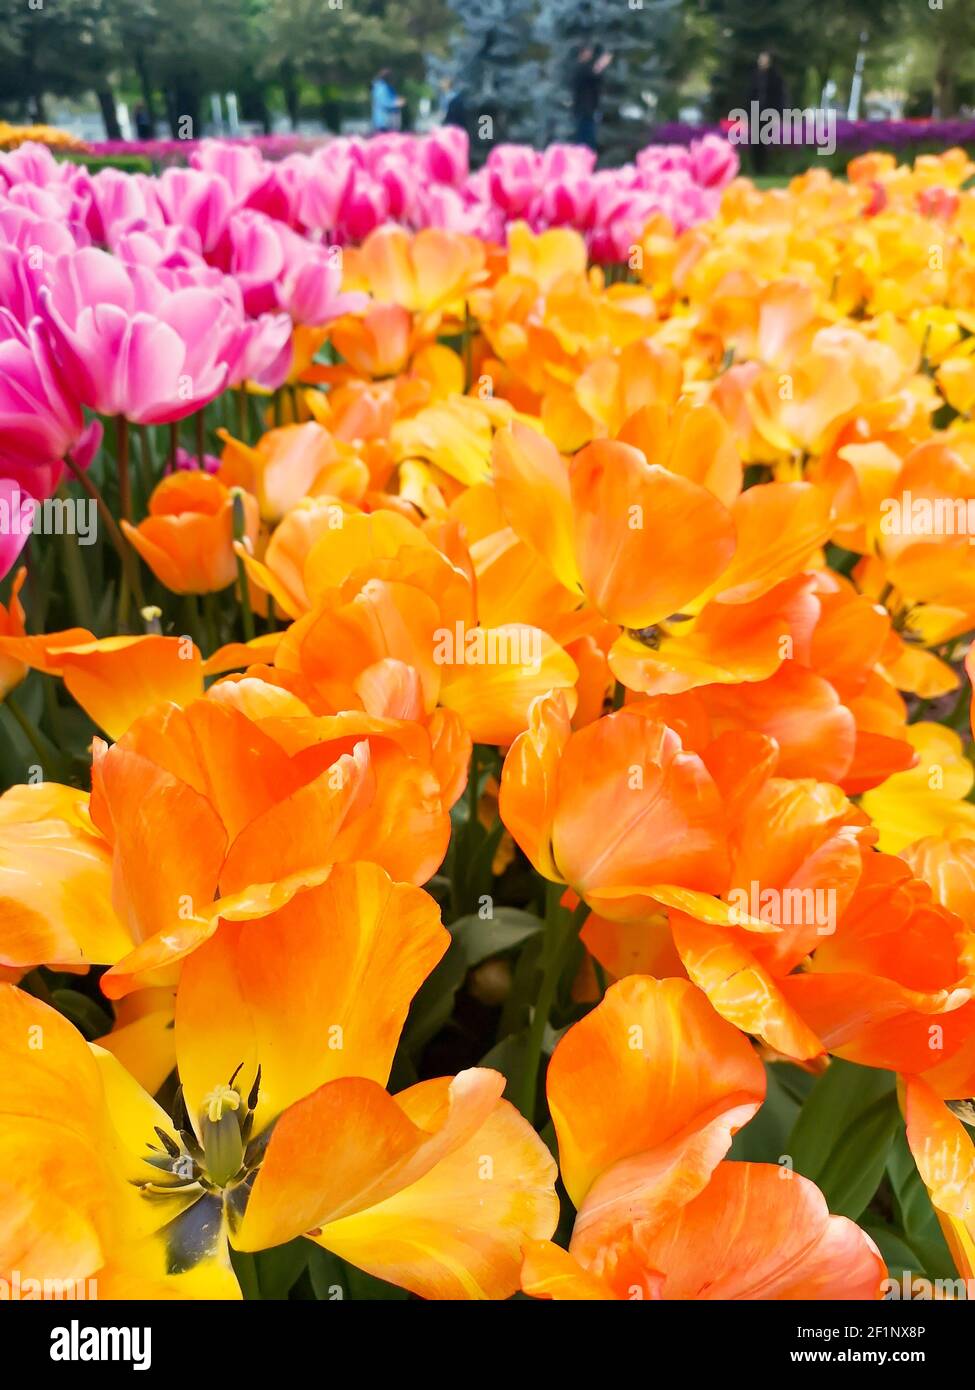 Nombreux tulipes romantiques et de saison. Un champ de fleurs jaunes et roses. Bouquet cadeau de printemps. Magnifique fond naturel à la lumière du jour Banque D'Images